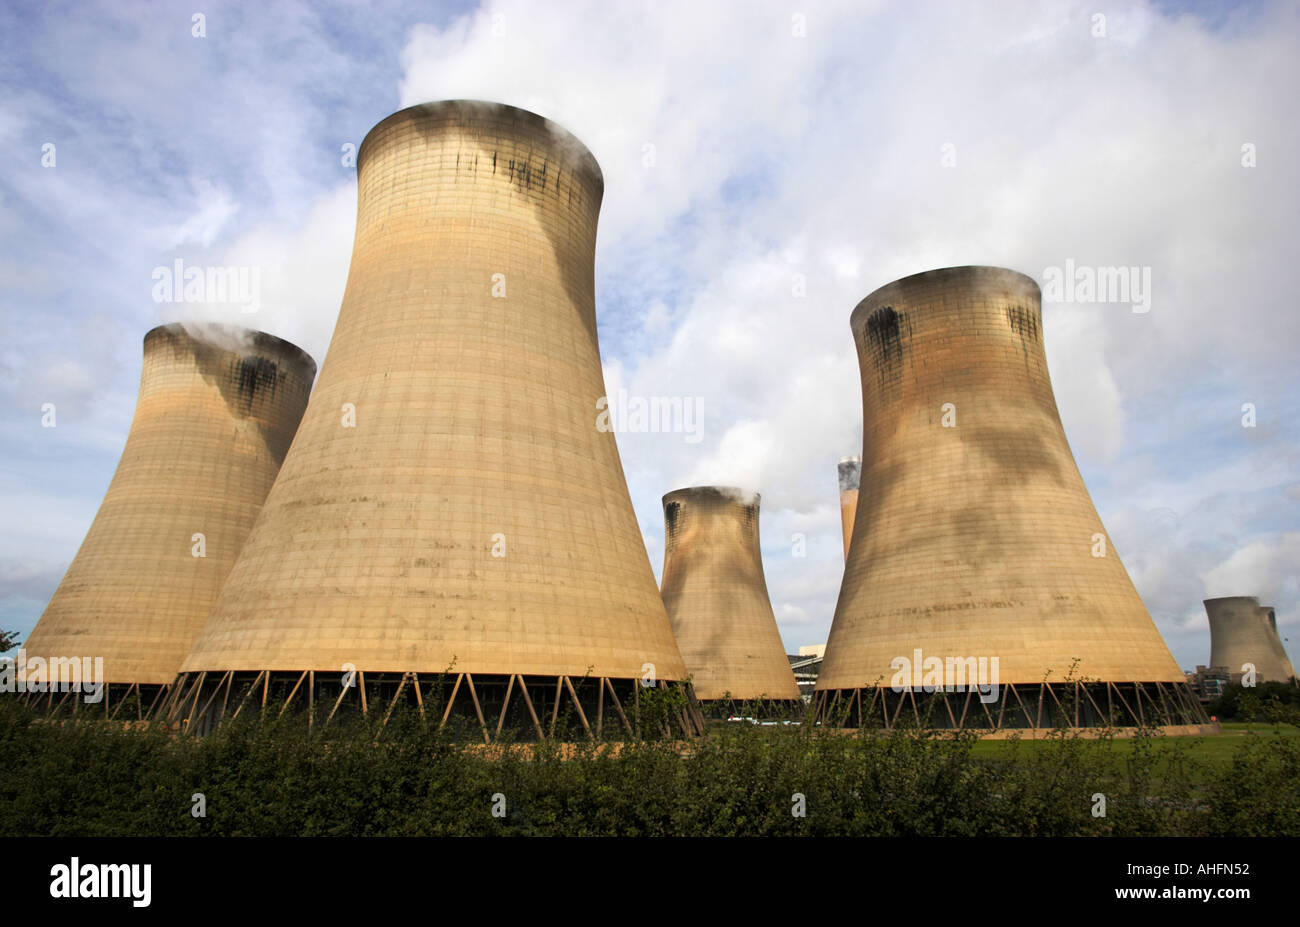 Les tours de refroidissement chez Drax power station près de Selby North Yorkshire Angleterre UK Banque D'Images